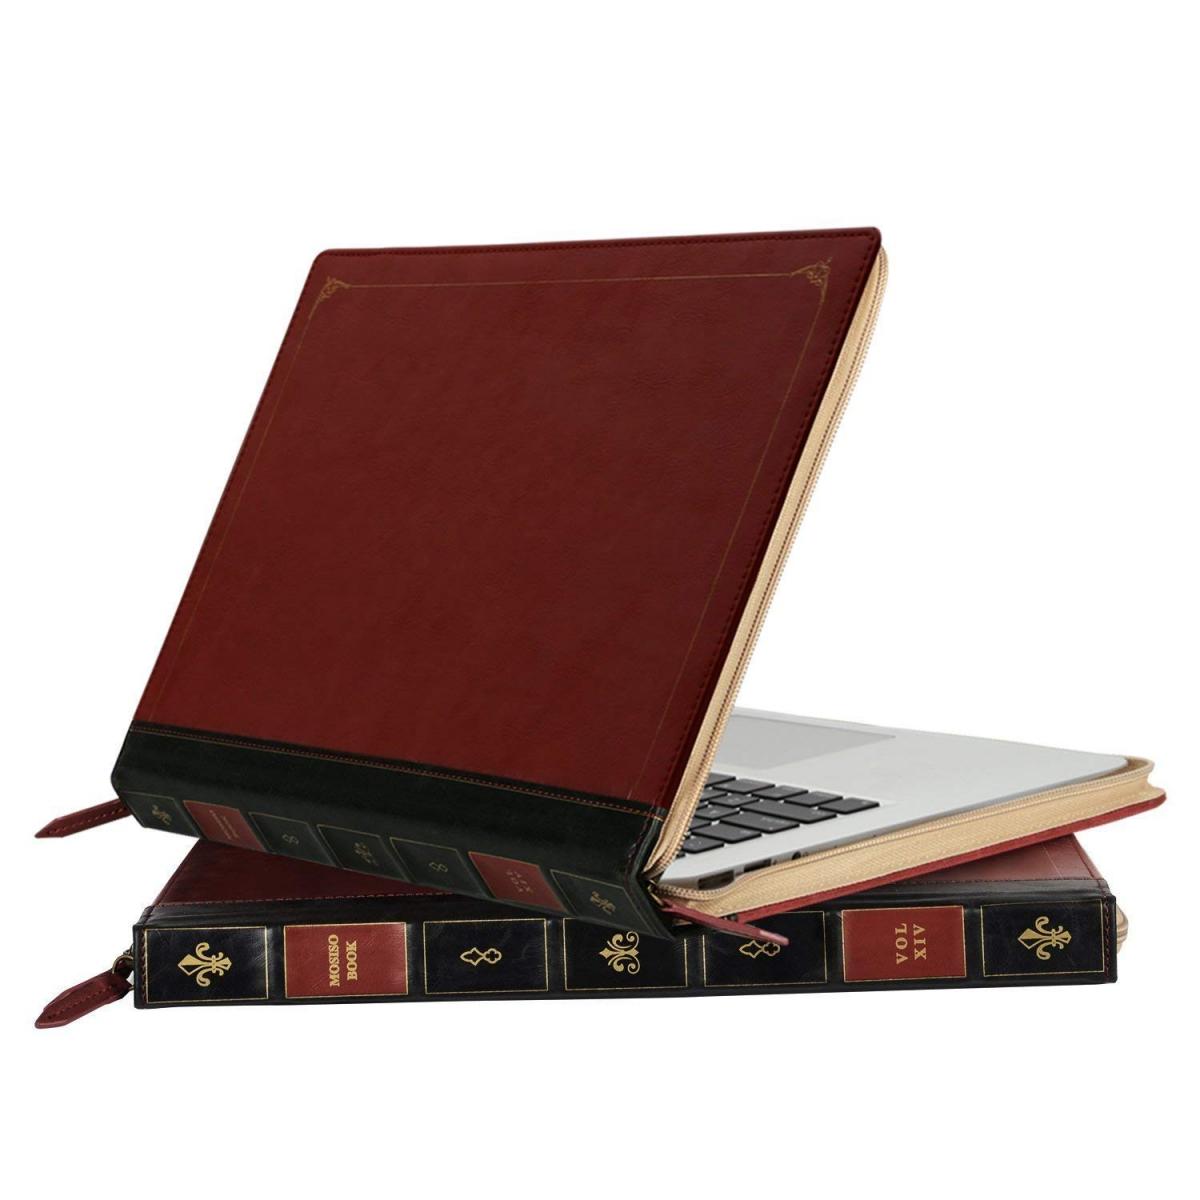 Une housse pour Macbook en forme de livre ancien